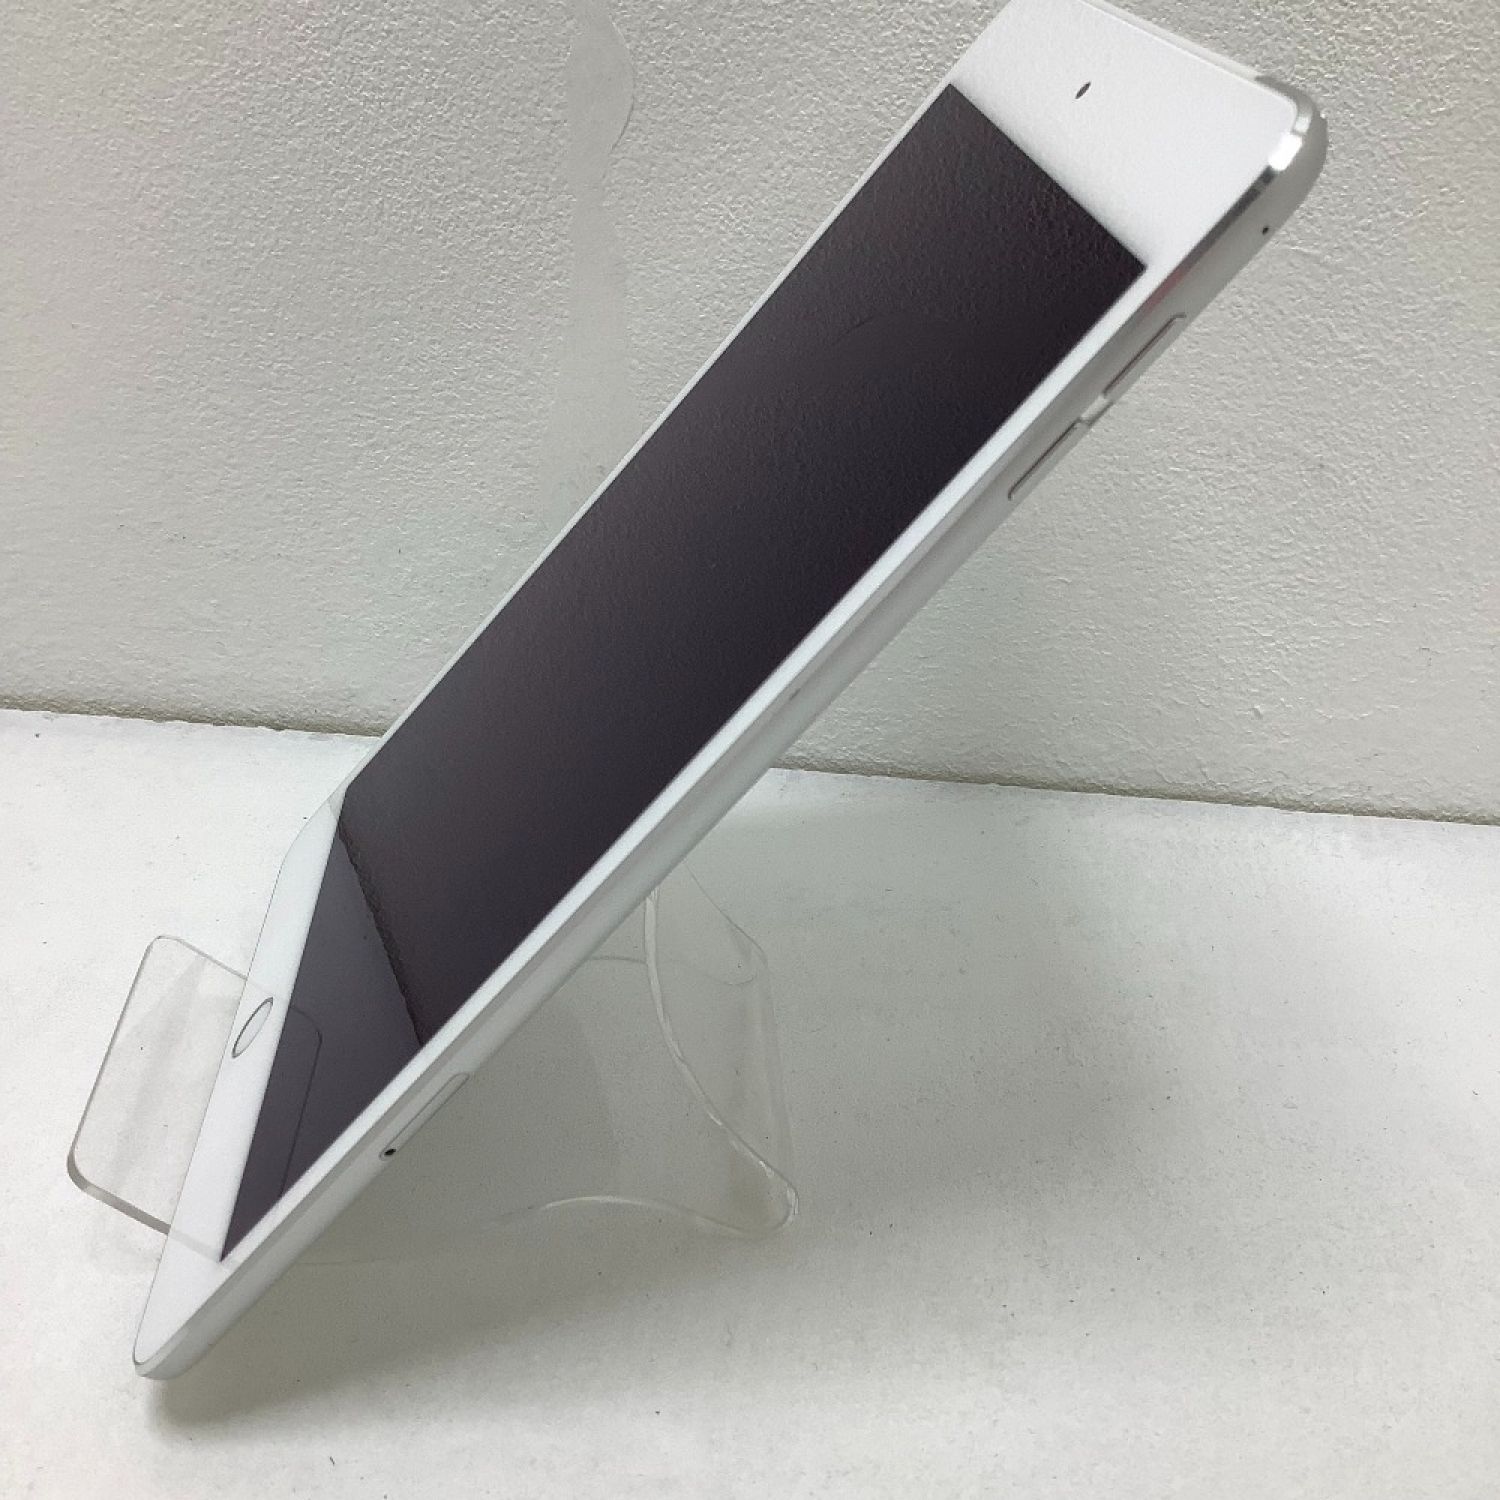 iPad MINI 4  WI-FI+CELL 32GB Silver